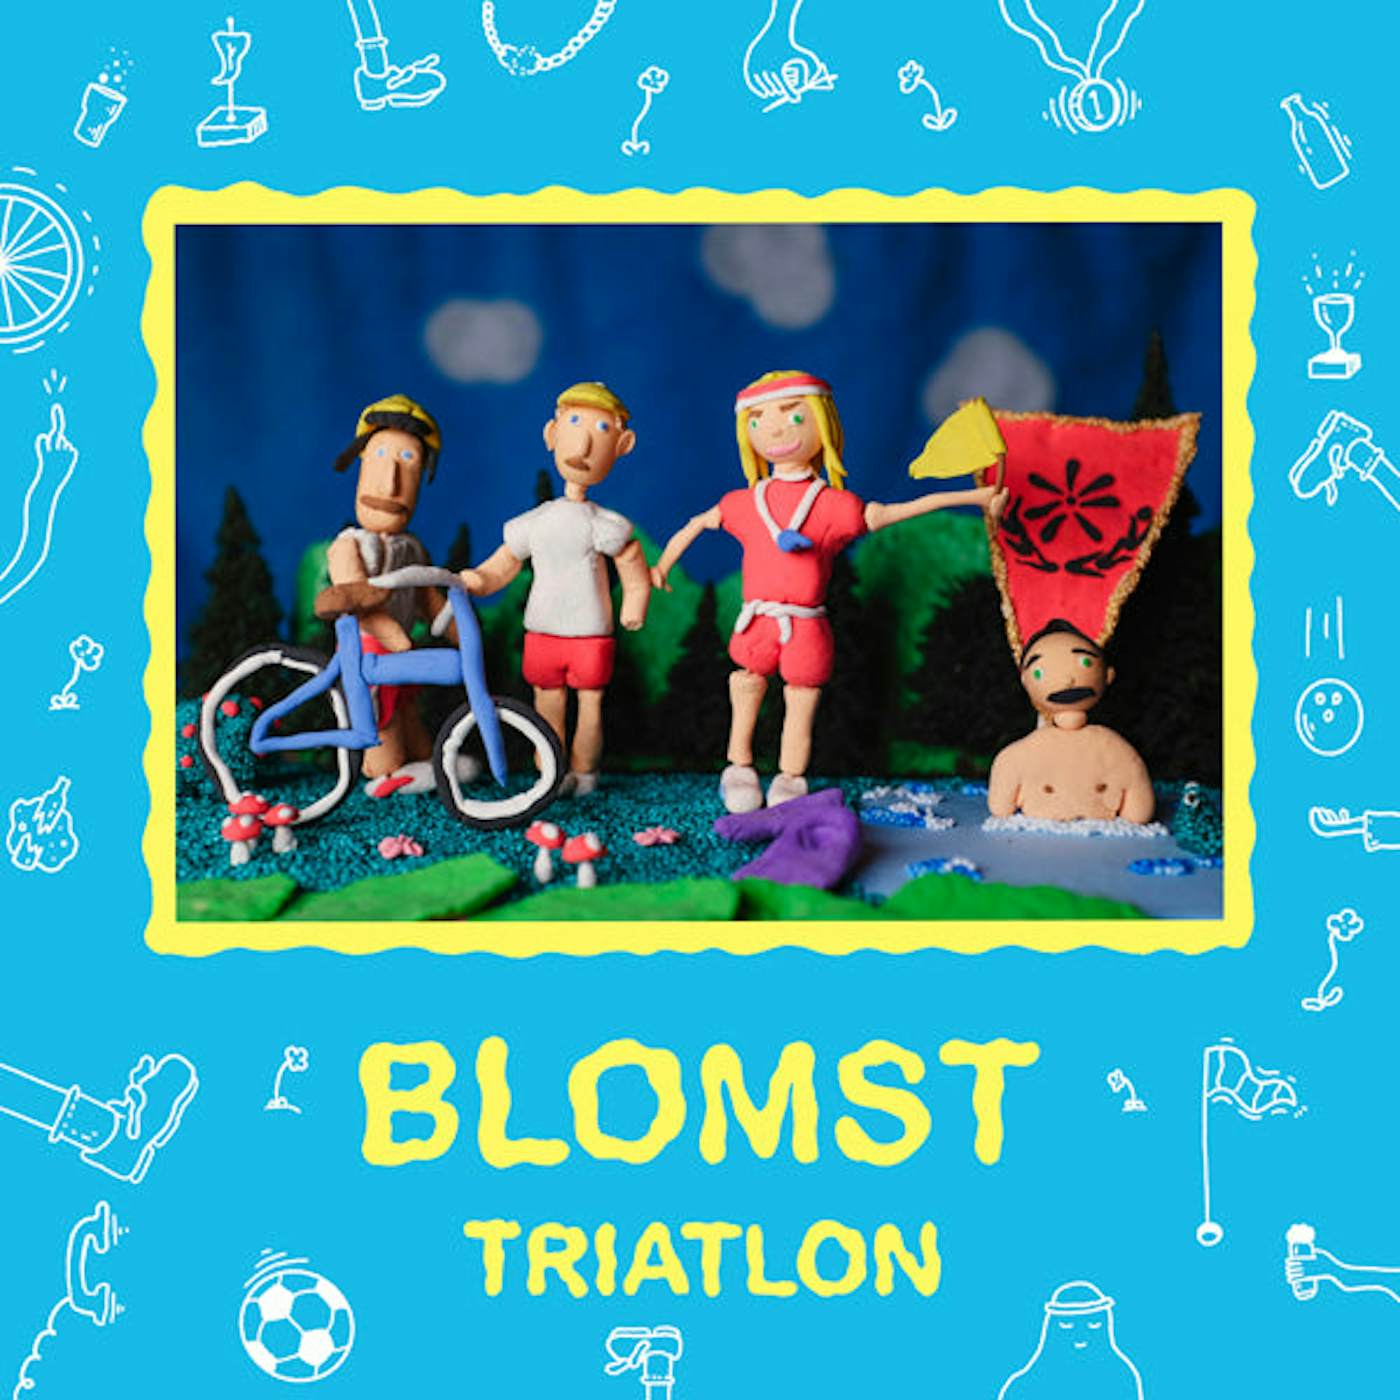 Blomst LP - Triatlon (Vinyl)